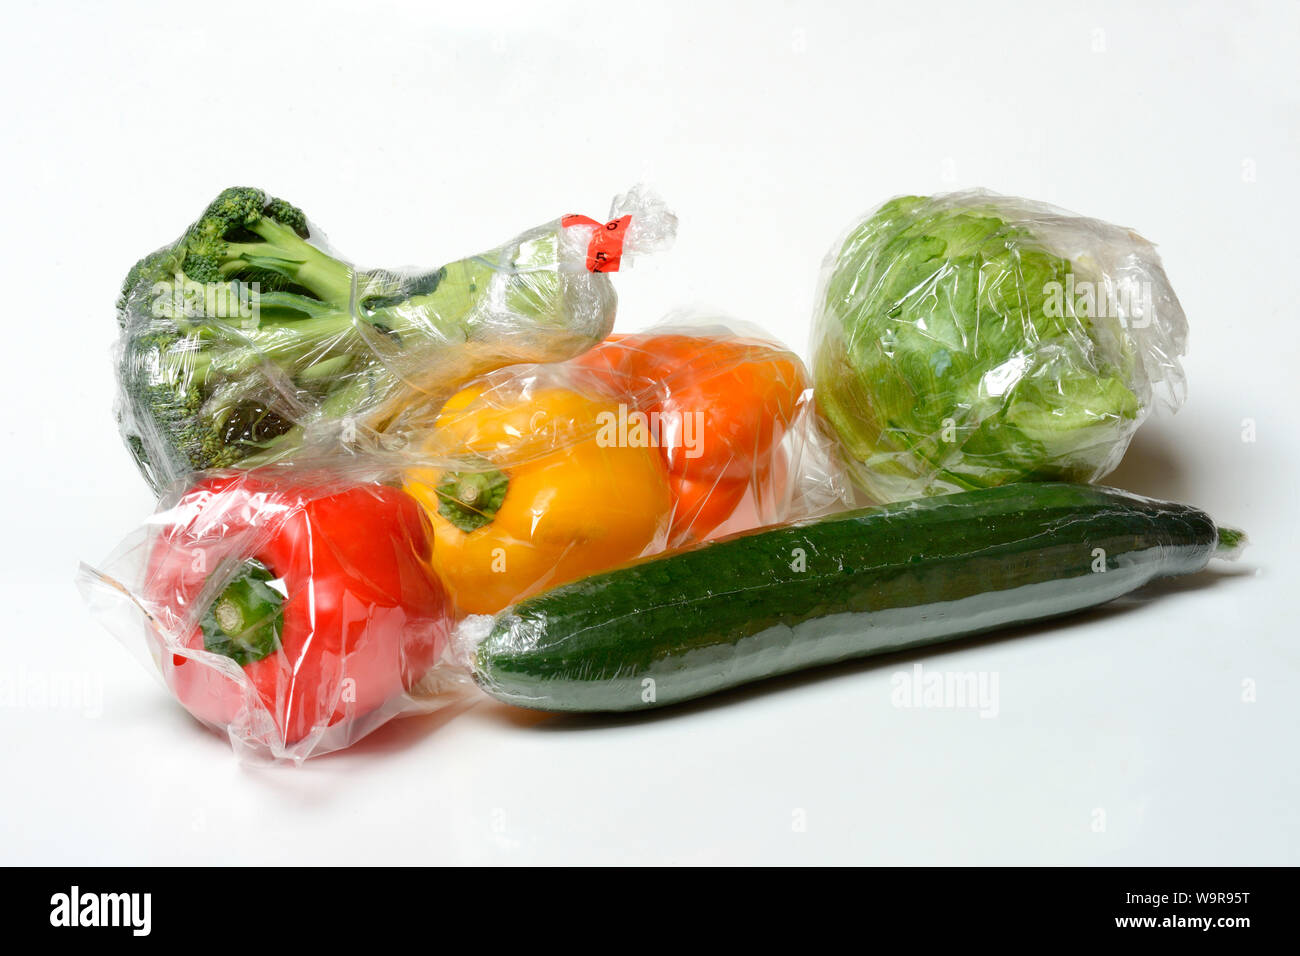 Les légumes dans des emballages en plastique Banque D'Images